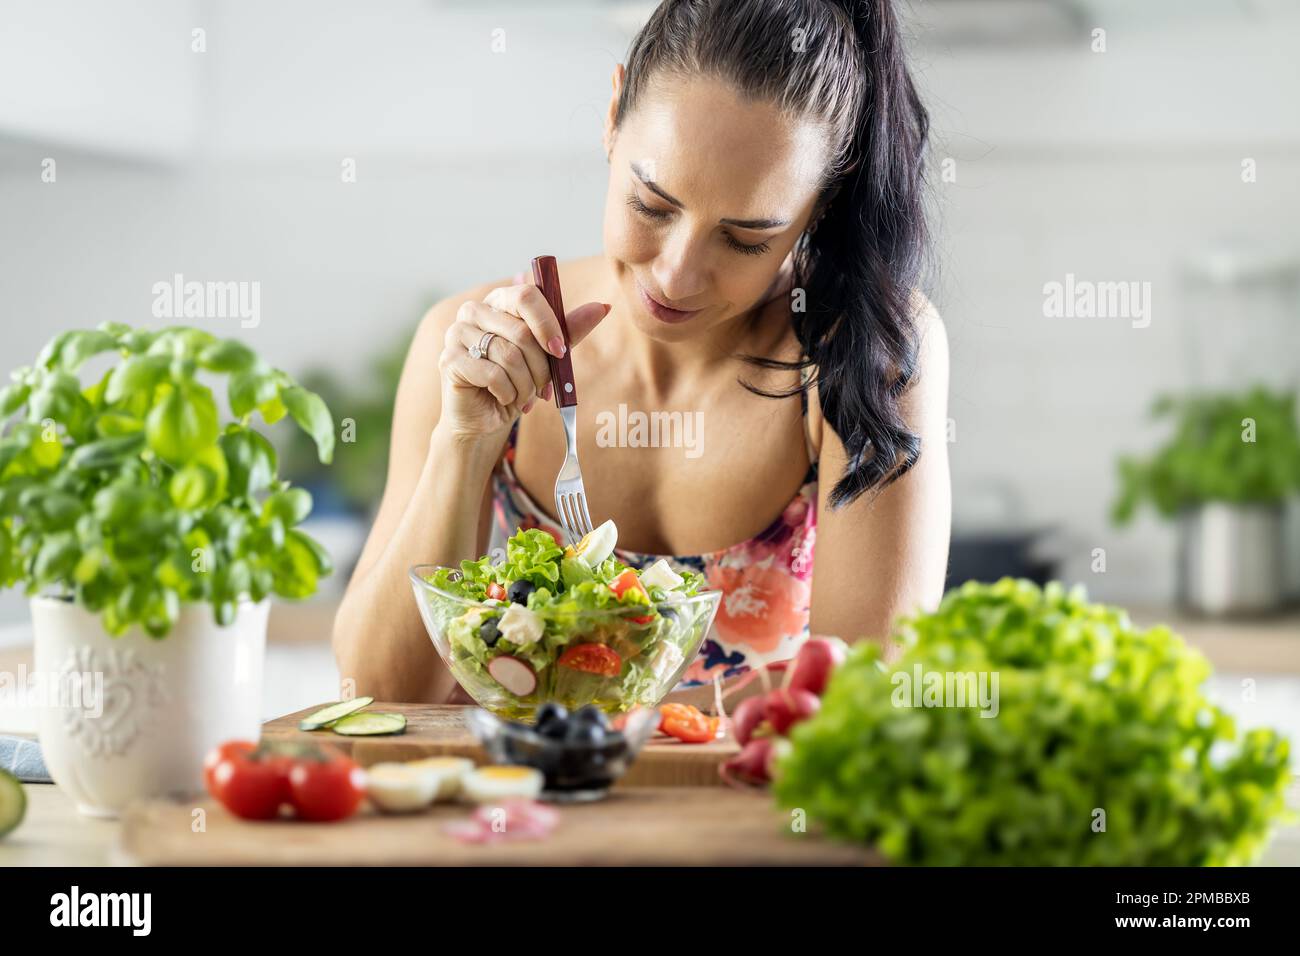 Gesunde Lebensweise junge Frau isst Salat. Junge Brünette, die in ihrer Küche gesundes Essen isst. Stockfoto